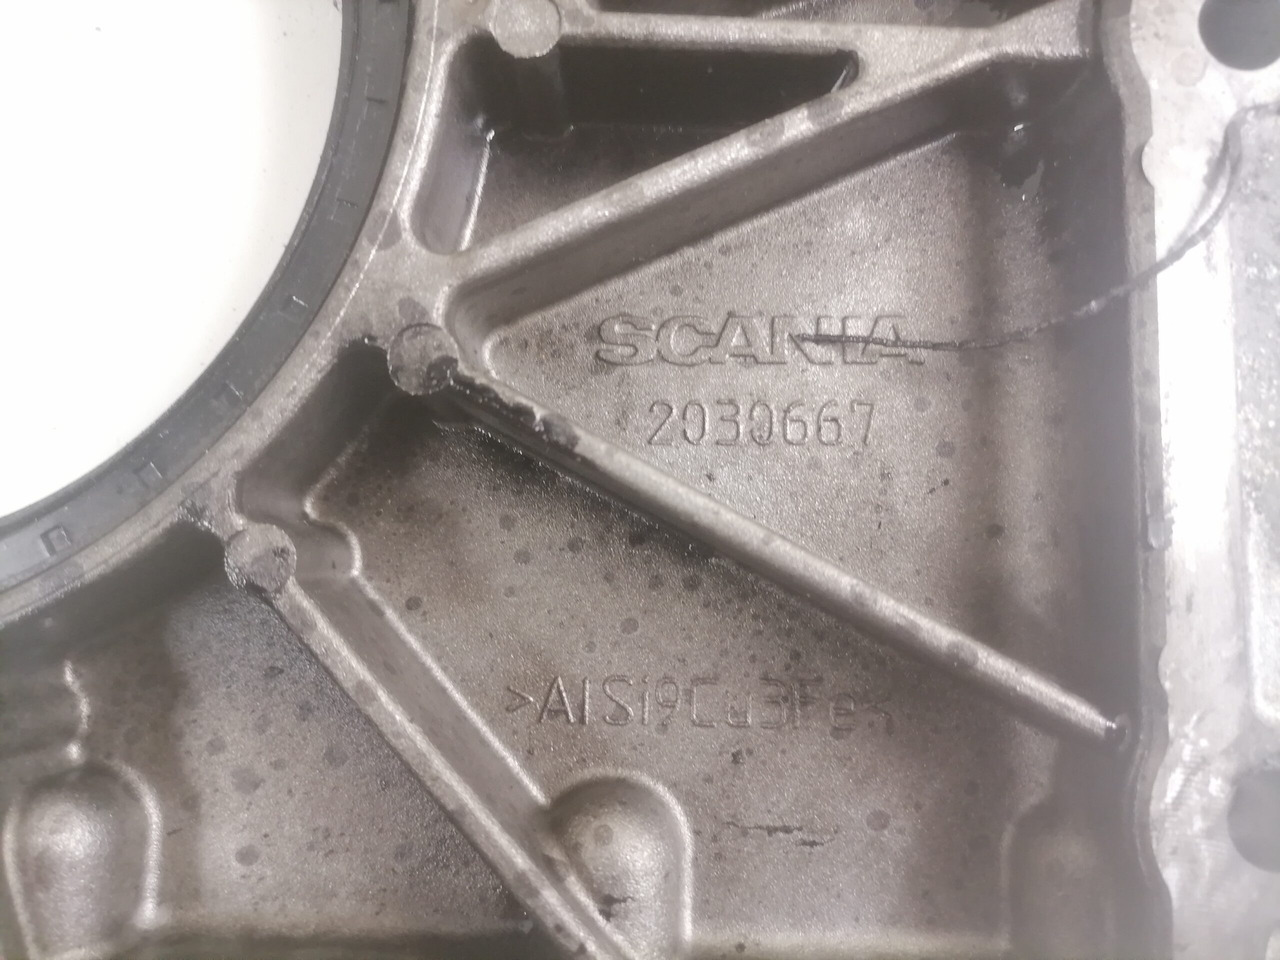 Motor og deler for Lastebil Scania Engine front cover 2030667: bilde 3